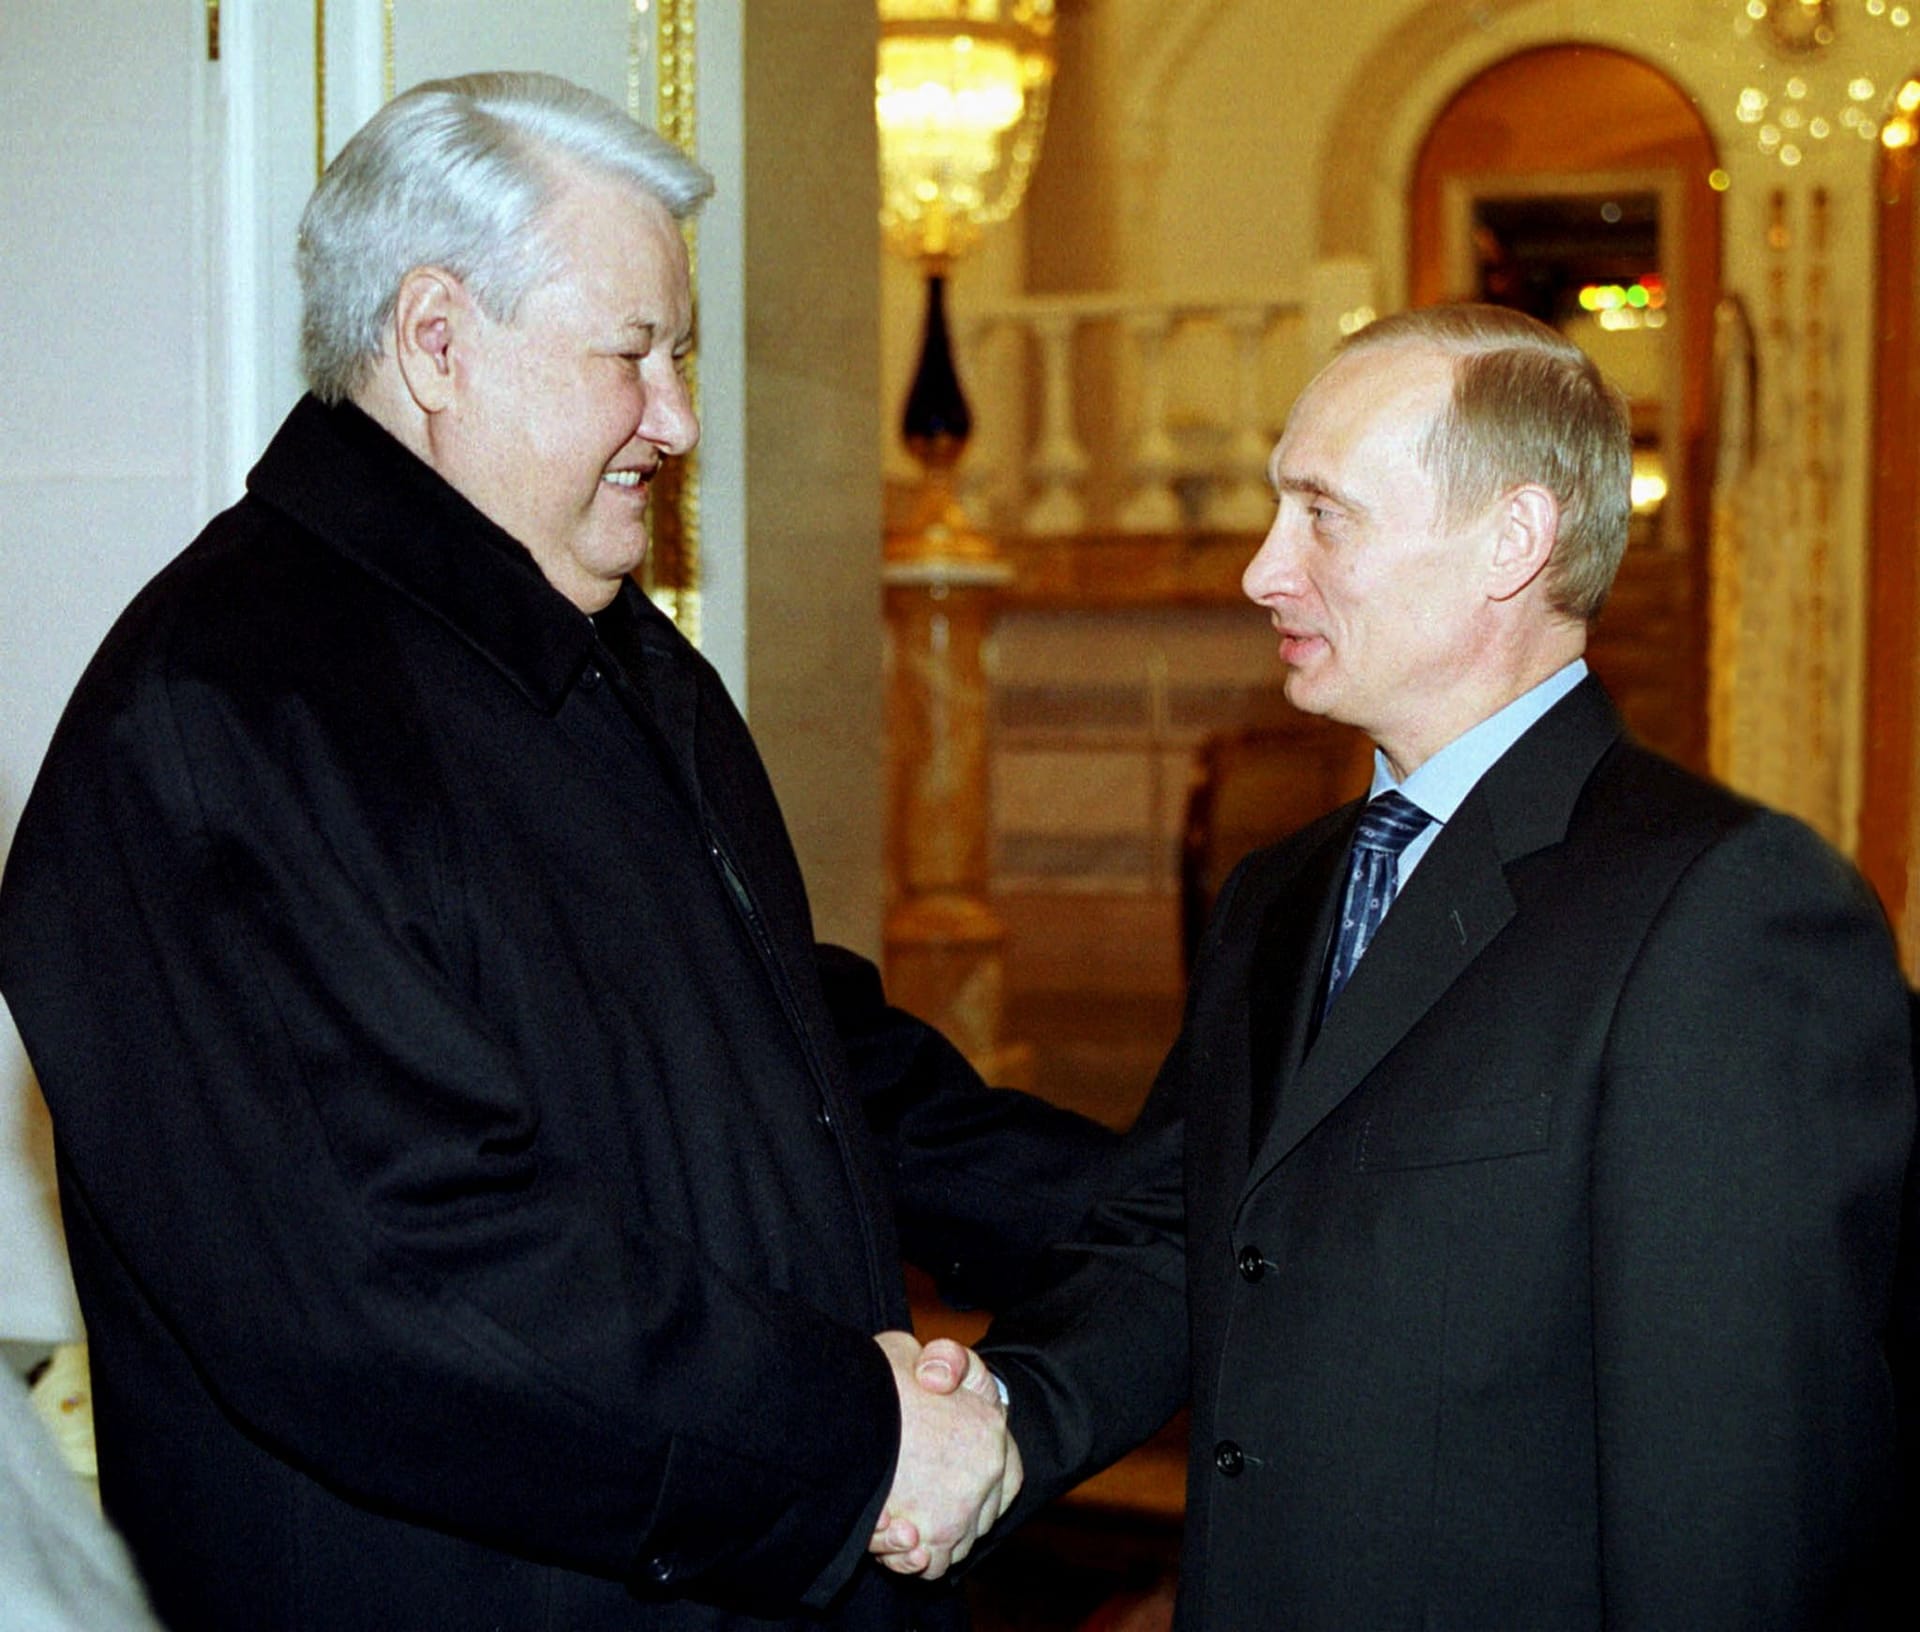 Der frühere Präsident Boris Jelzin (l.) und sein Nachfolger Wladimir Putin bei einem treffen im Kreml in den späten 90er-Jahren. Karaganow beriet beide Politiker.